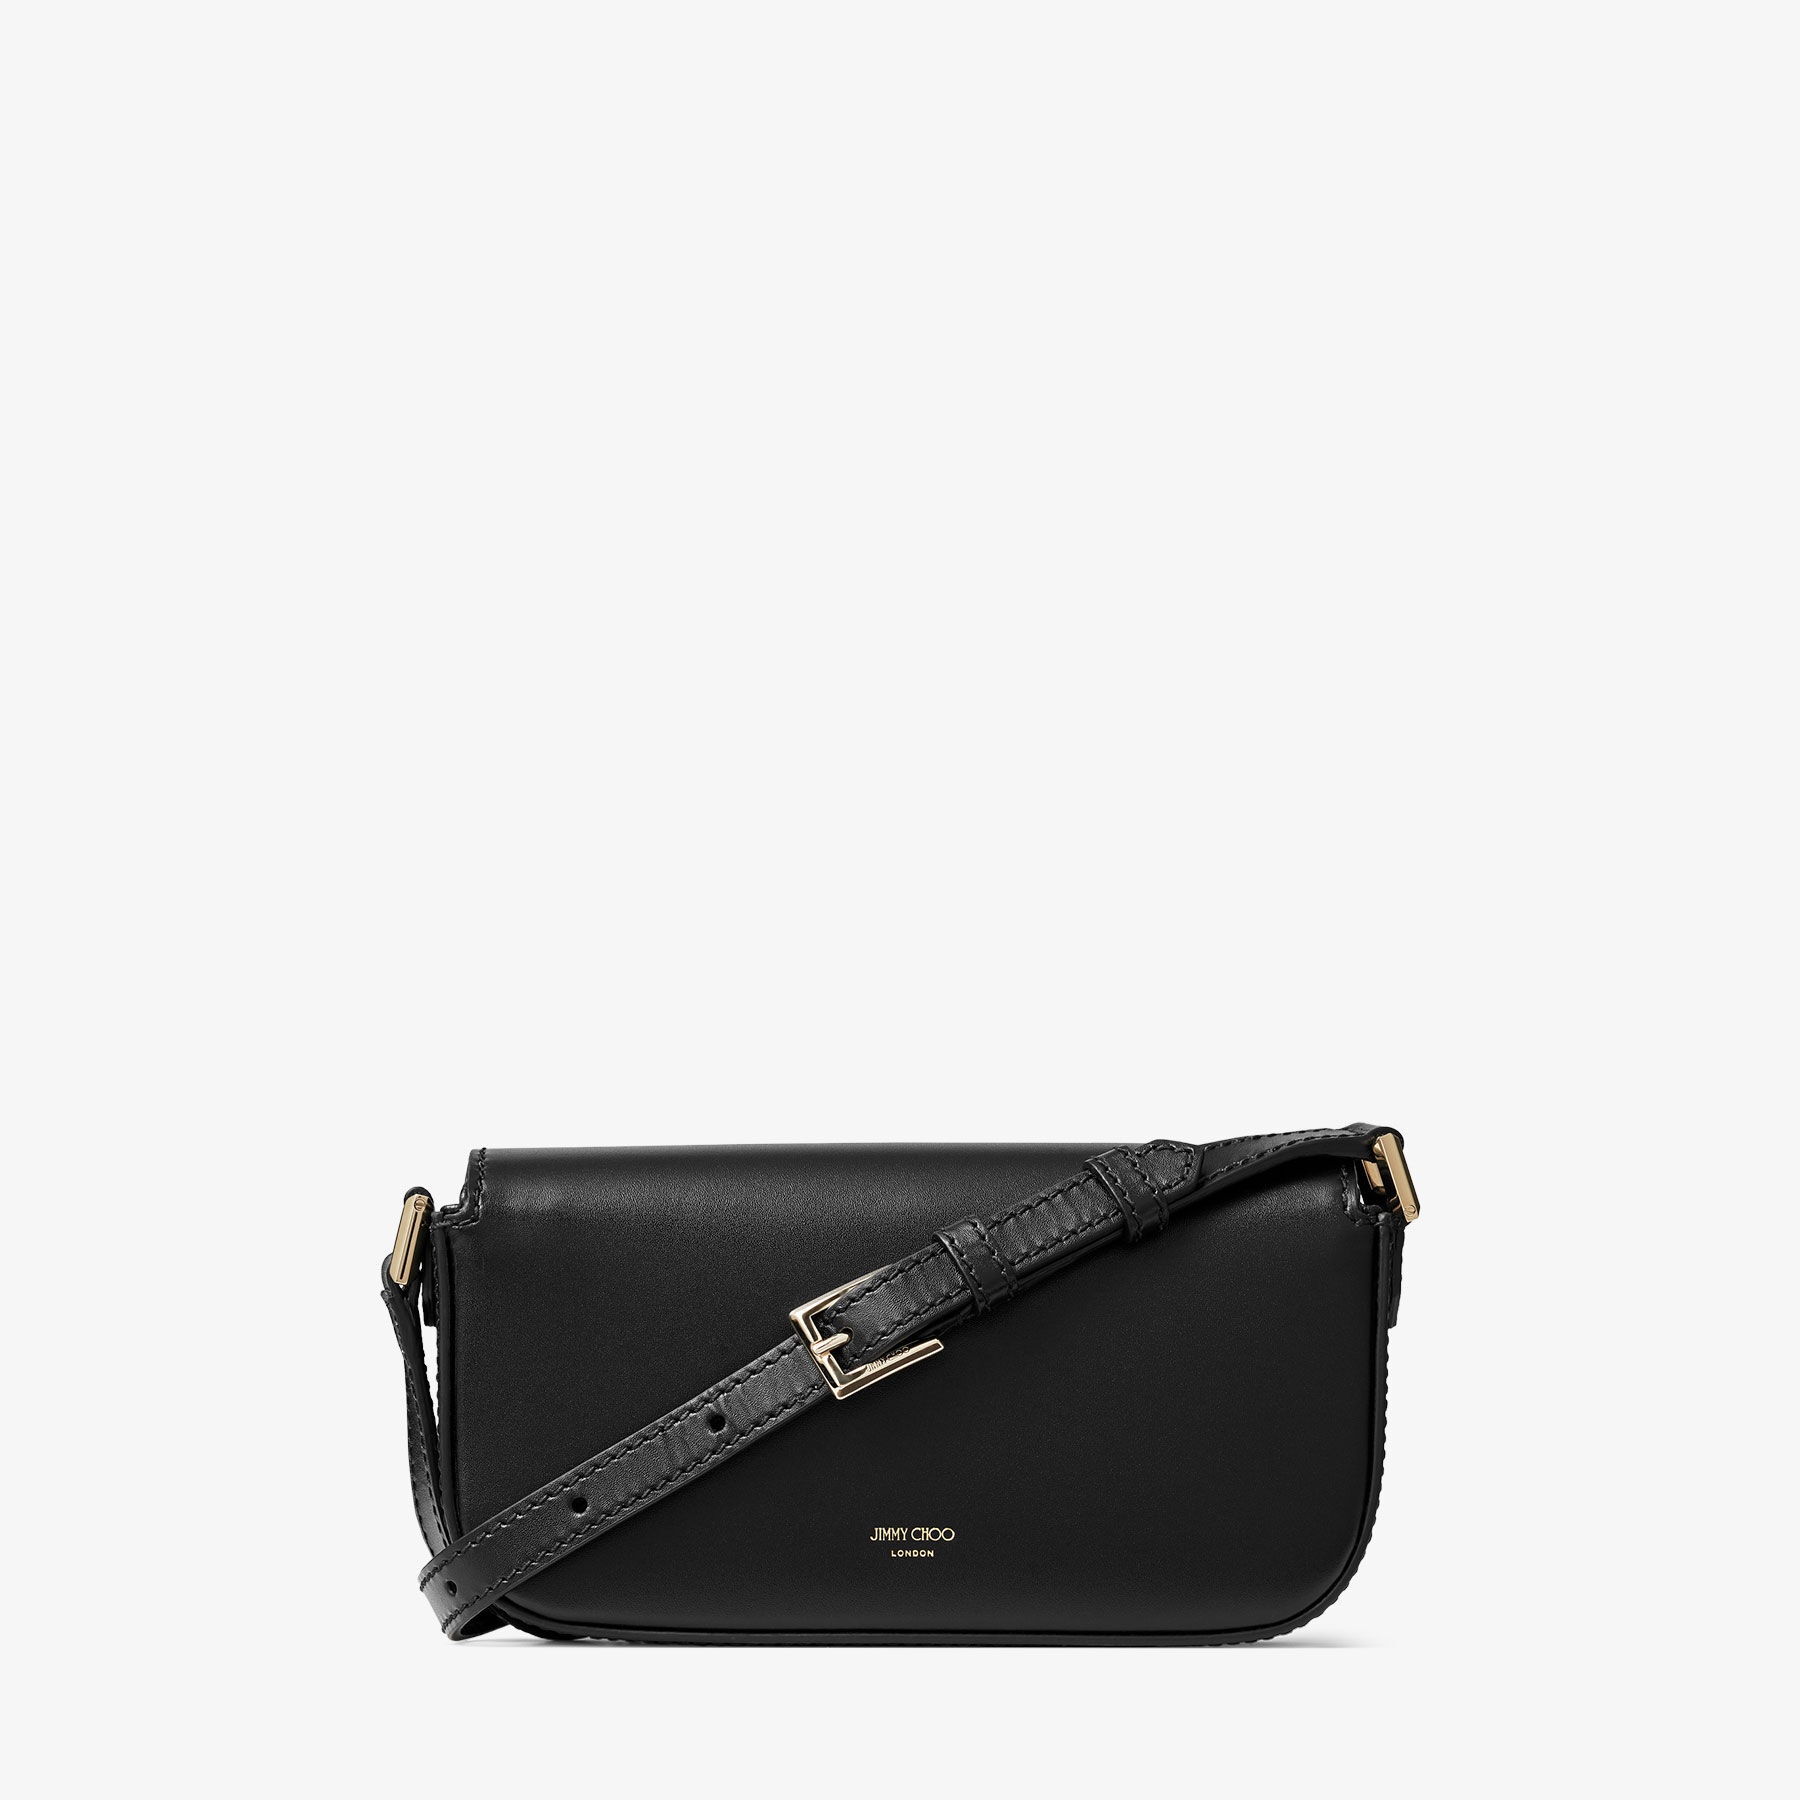 Varenne Mini Shoulder
Black Leather Mini Shoulder Bag with JC Emblem - 7